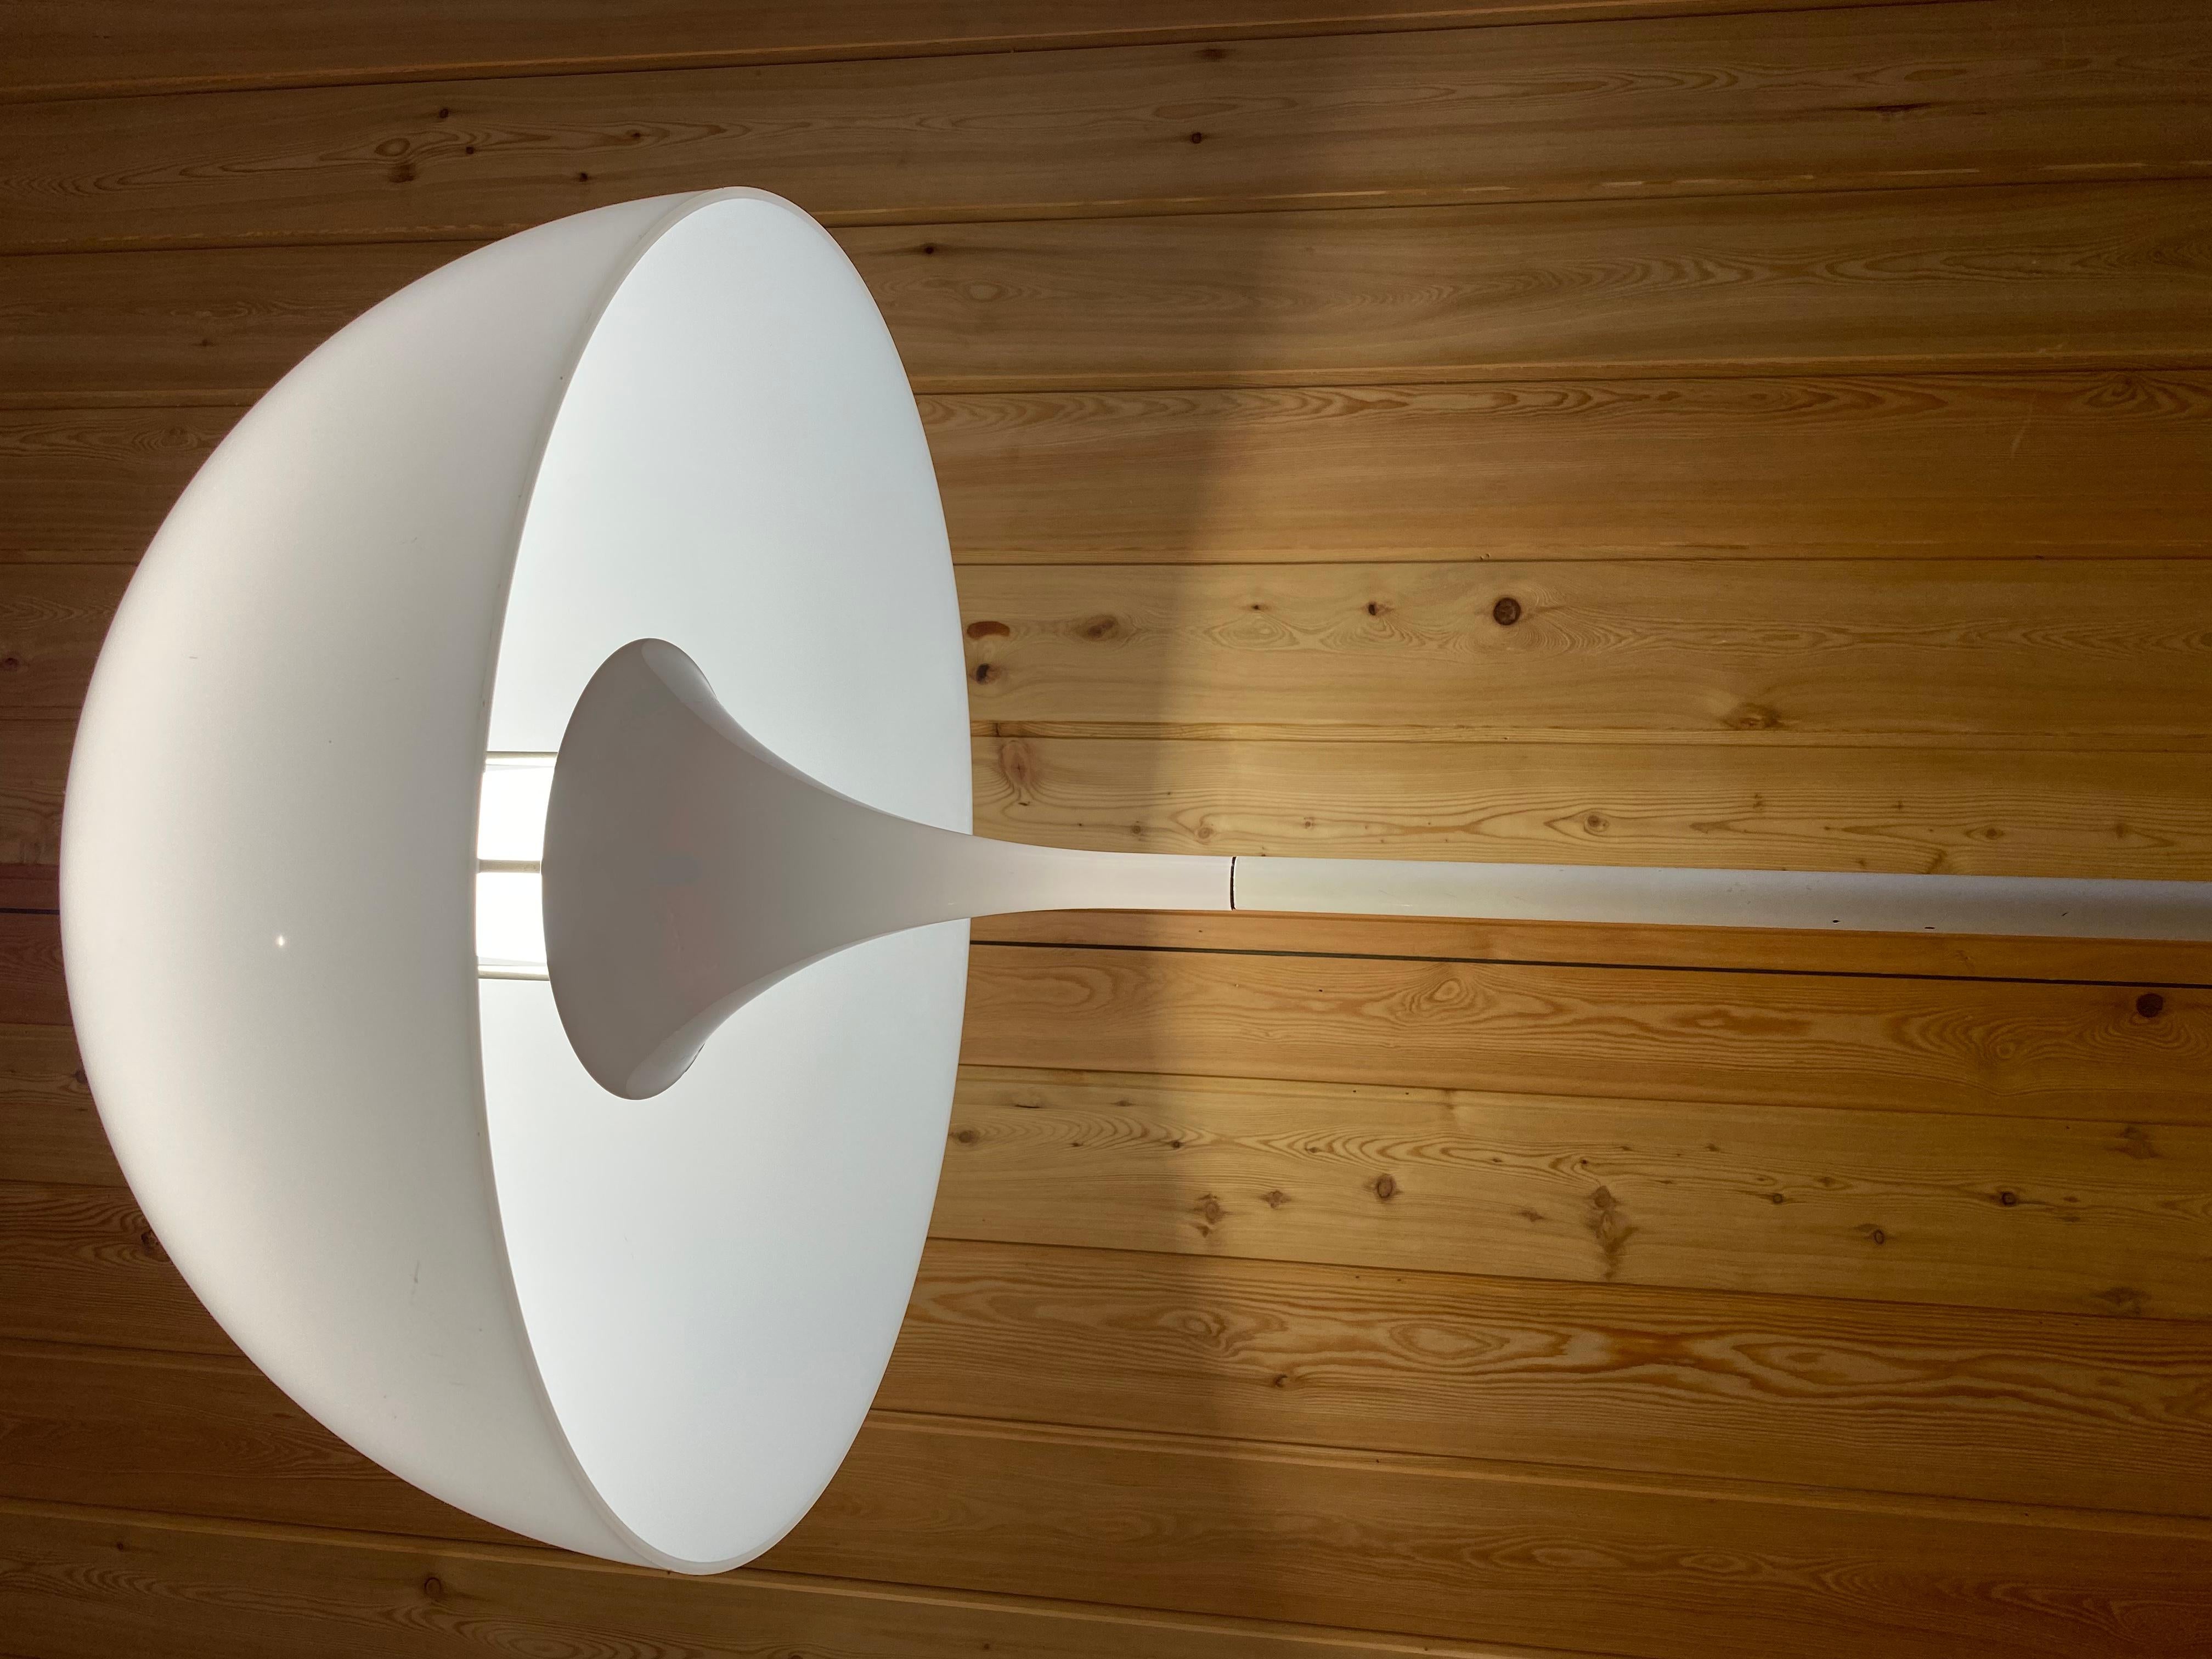 La collection Panthella est basée sur la lampe de table Panthella de 1971. Le célèbre designer Verner Panton souhaitait créer une lampe aux formes organiques qui reflétaient aussi bien la lumière de l'abat-jour que celle du pied de la lampe. 

La